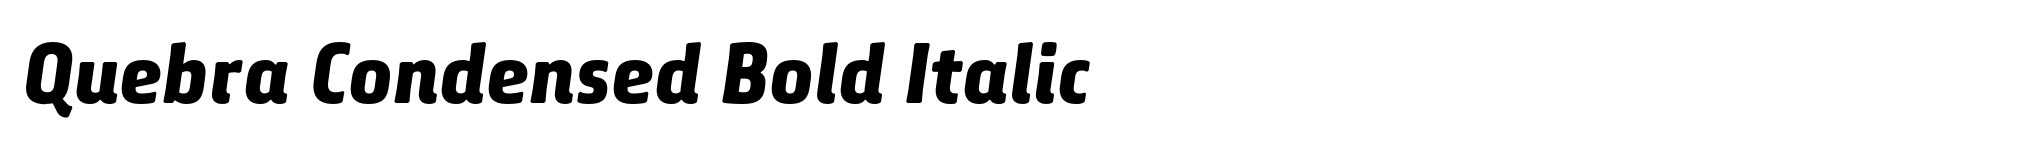 Quebra Condensed Bold Italic image